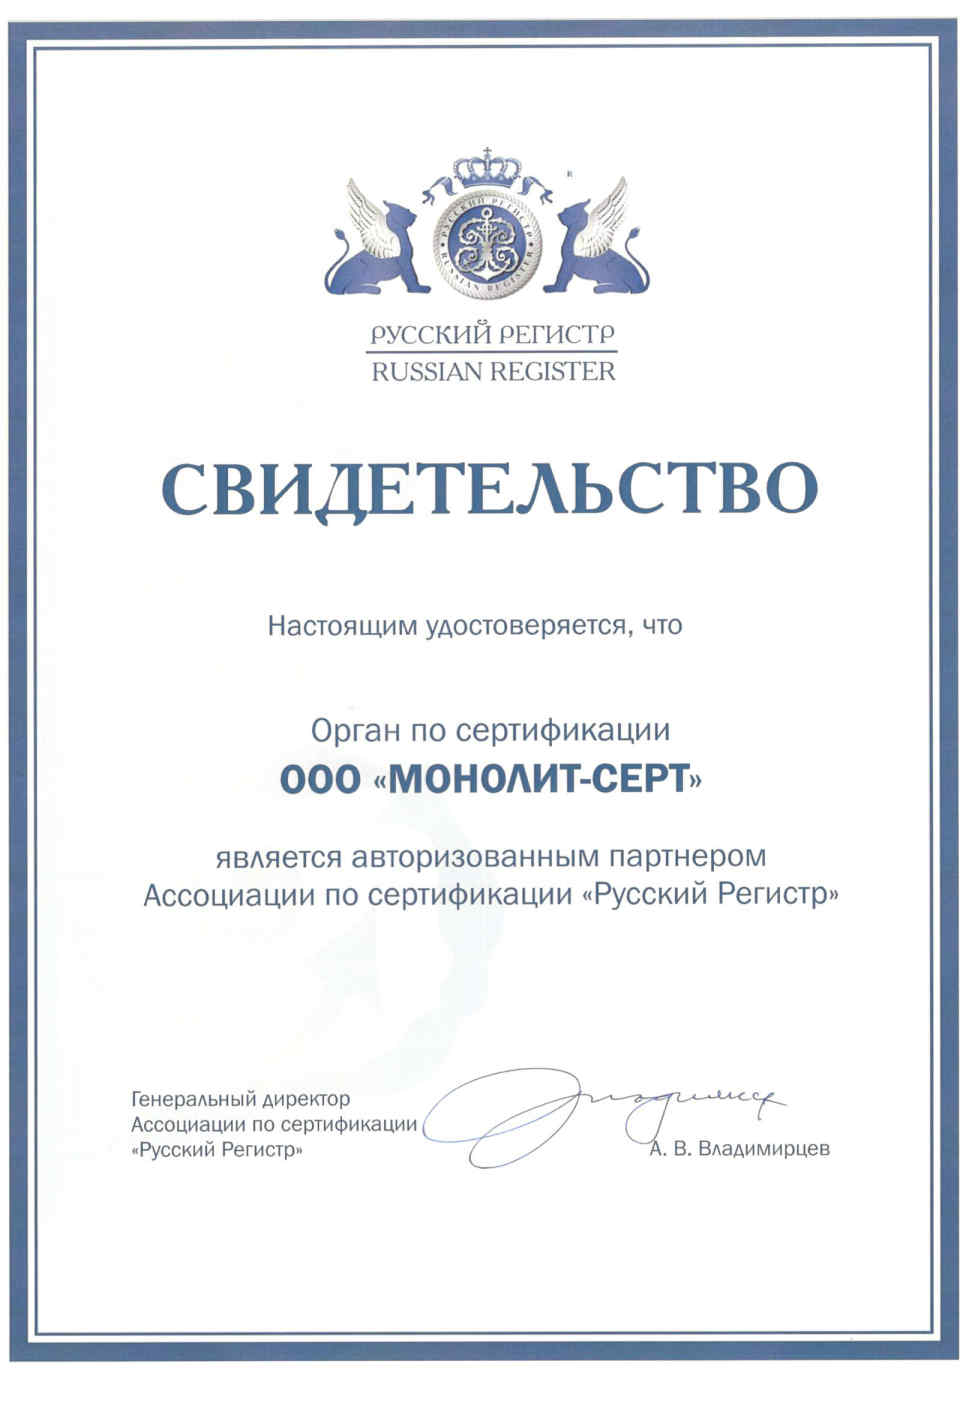 Свидетельство авторизованного партнера Ассоциации по сертификации "Русский регистр"